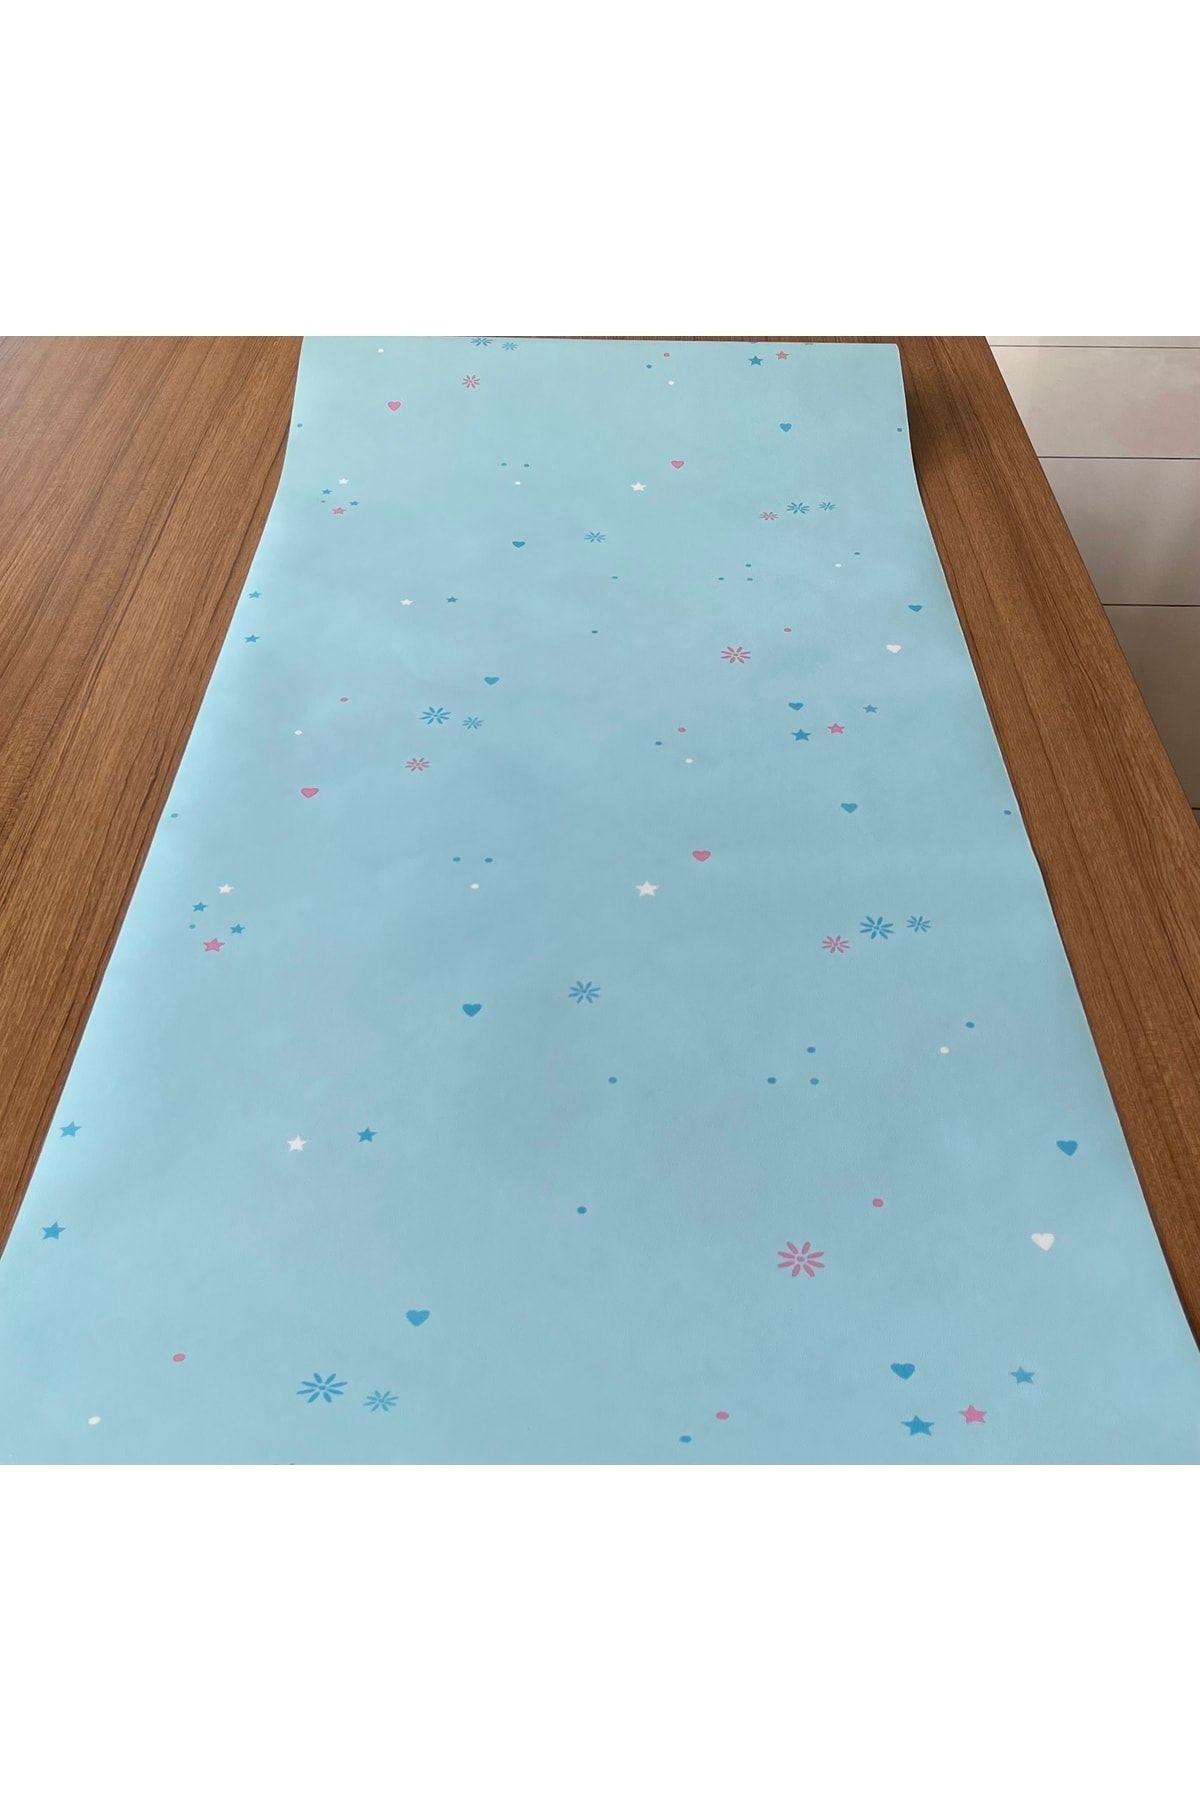 BAŞYAPI DİZAYN Açık Mavi Desenli Çocuk-bebek Odası Ithal Duvar Kağıdı (5m²)